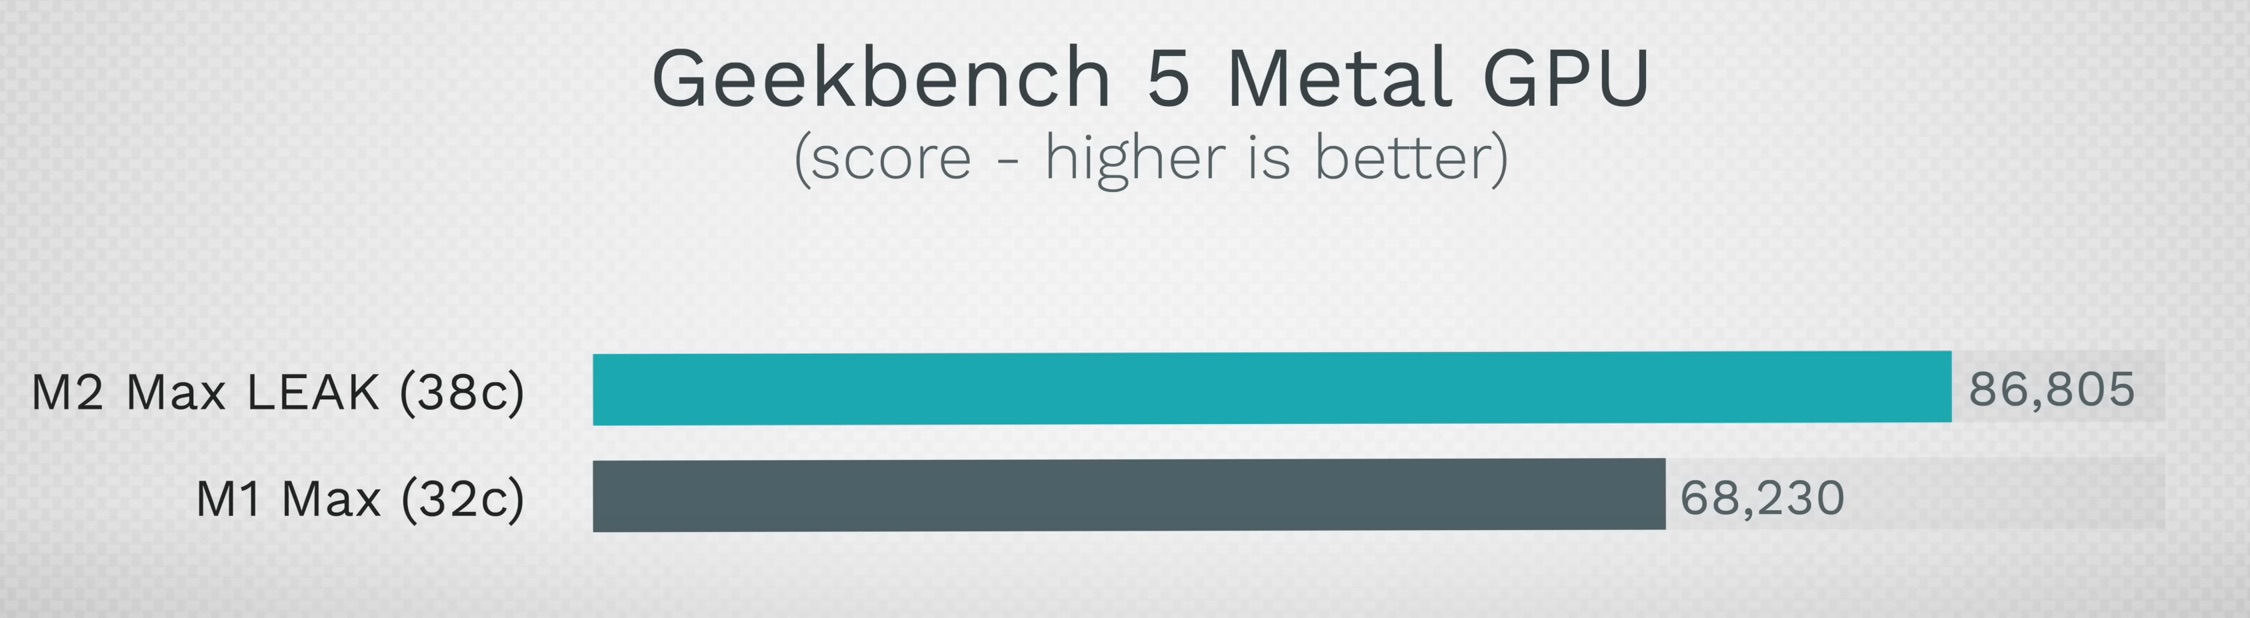 Mejora de rendimiento de la GPU del M2 Max en comparación con el M1 Max